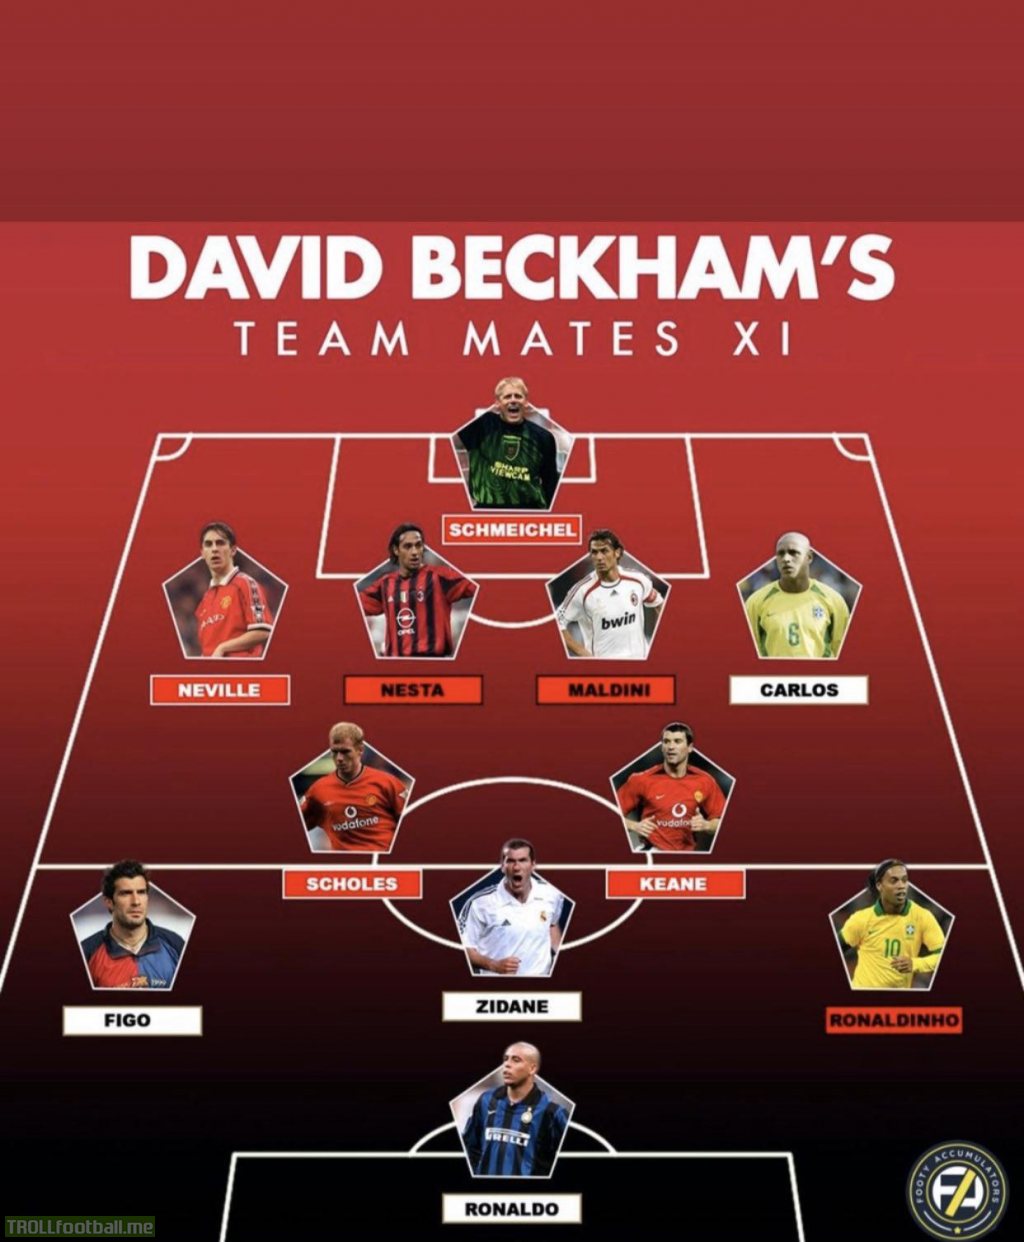 David Beckham chooses his “teammates XI” : Schmeichel - Neville Nesta Maldini Roberto Carlos - Scholes Keane - Figo Zidane Ronaldinho - R9